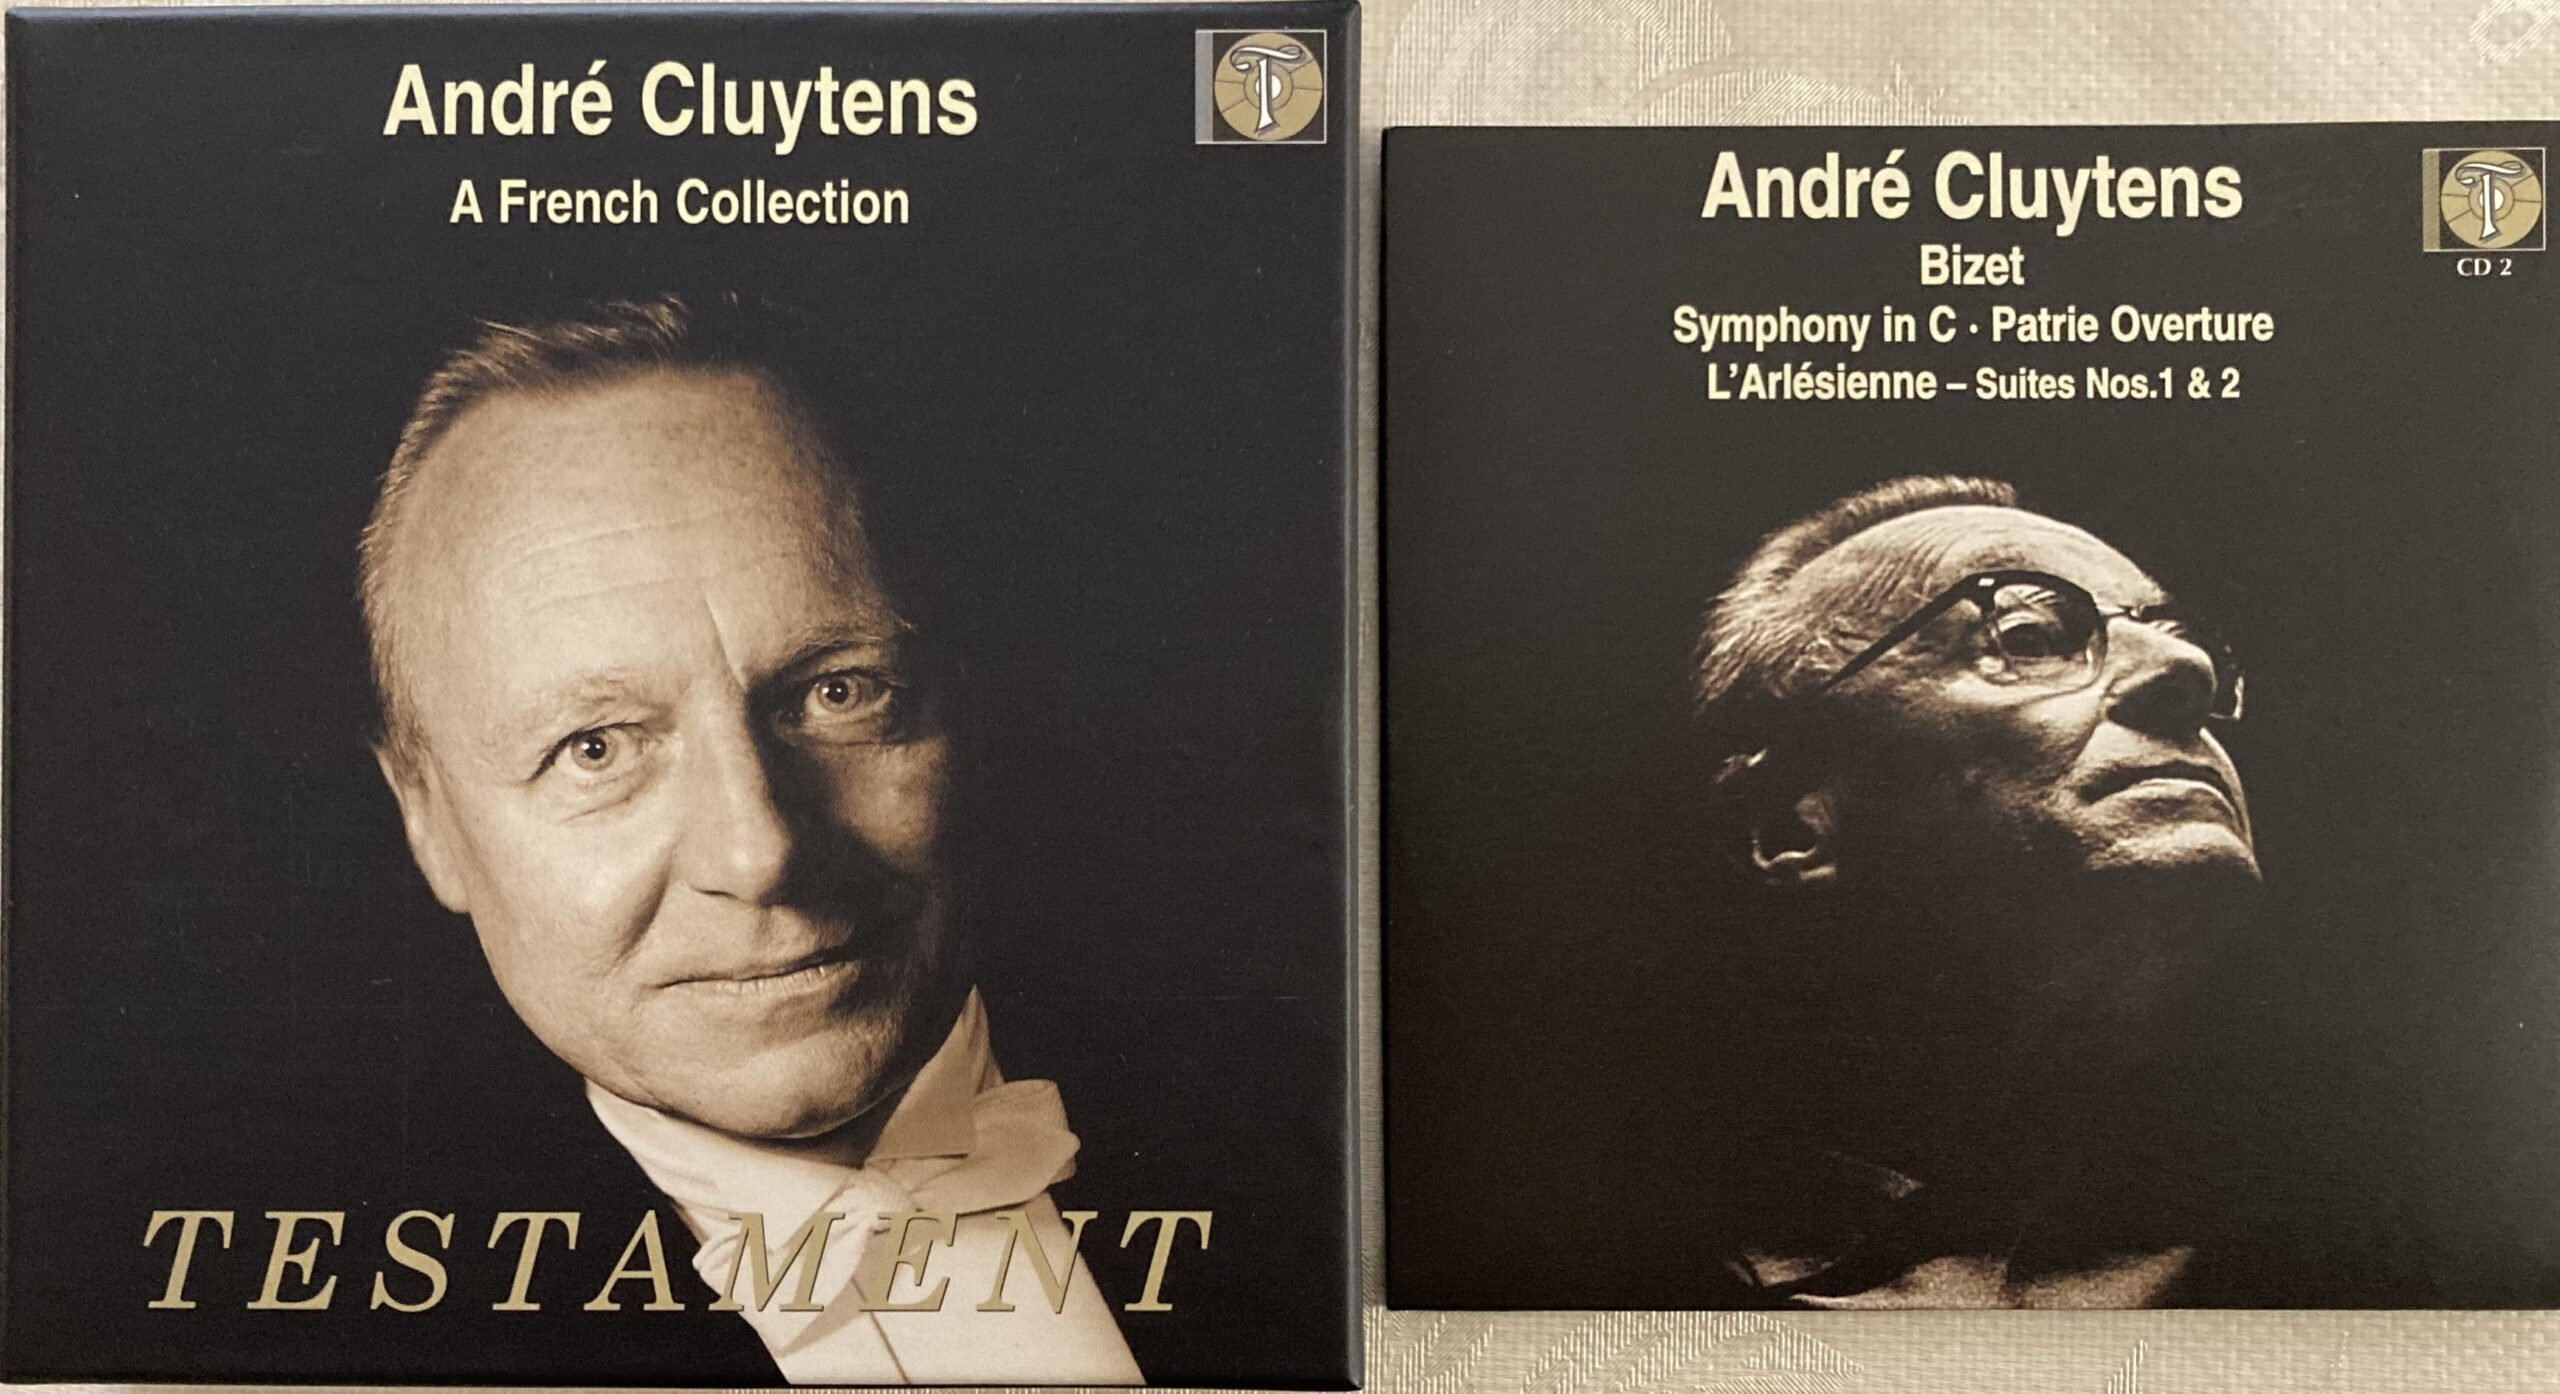 復刻されたクリュイタンスのフランス音楽のボックスとその中のビゼーの演奏を収めた１枚を並列させて撮影した写真